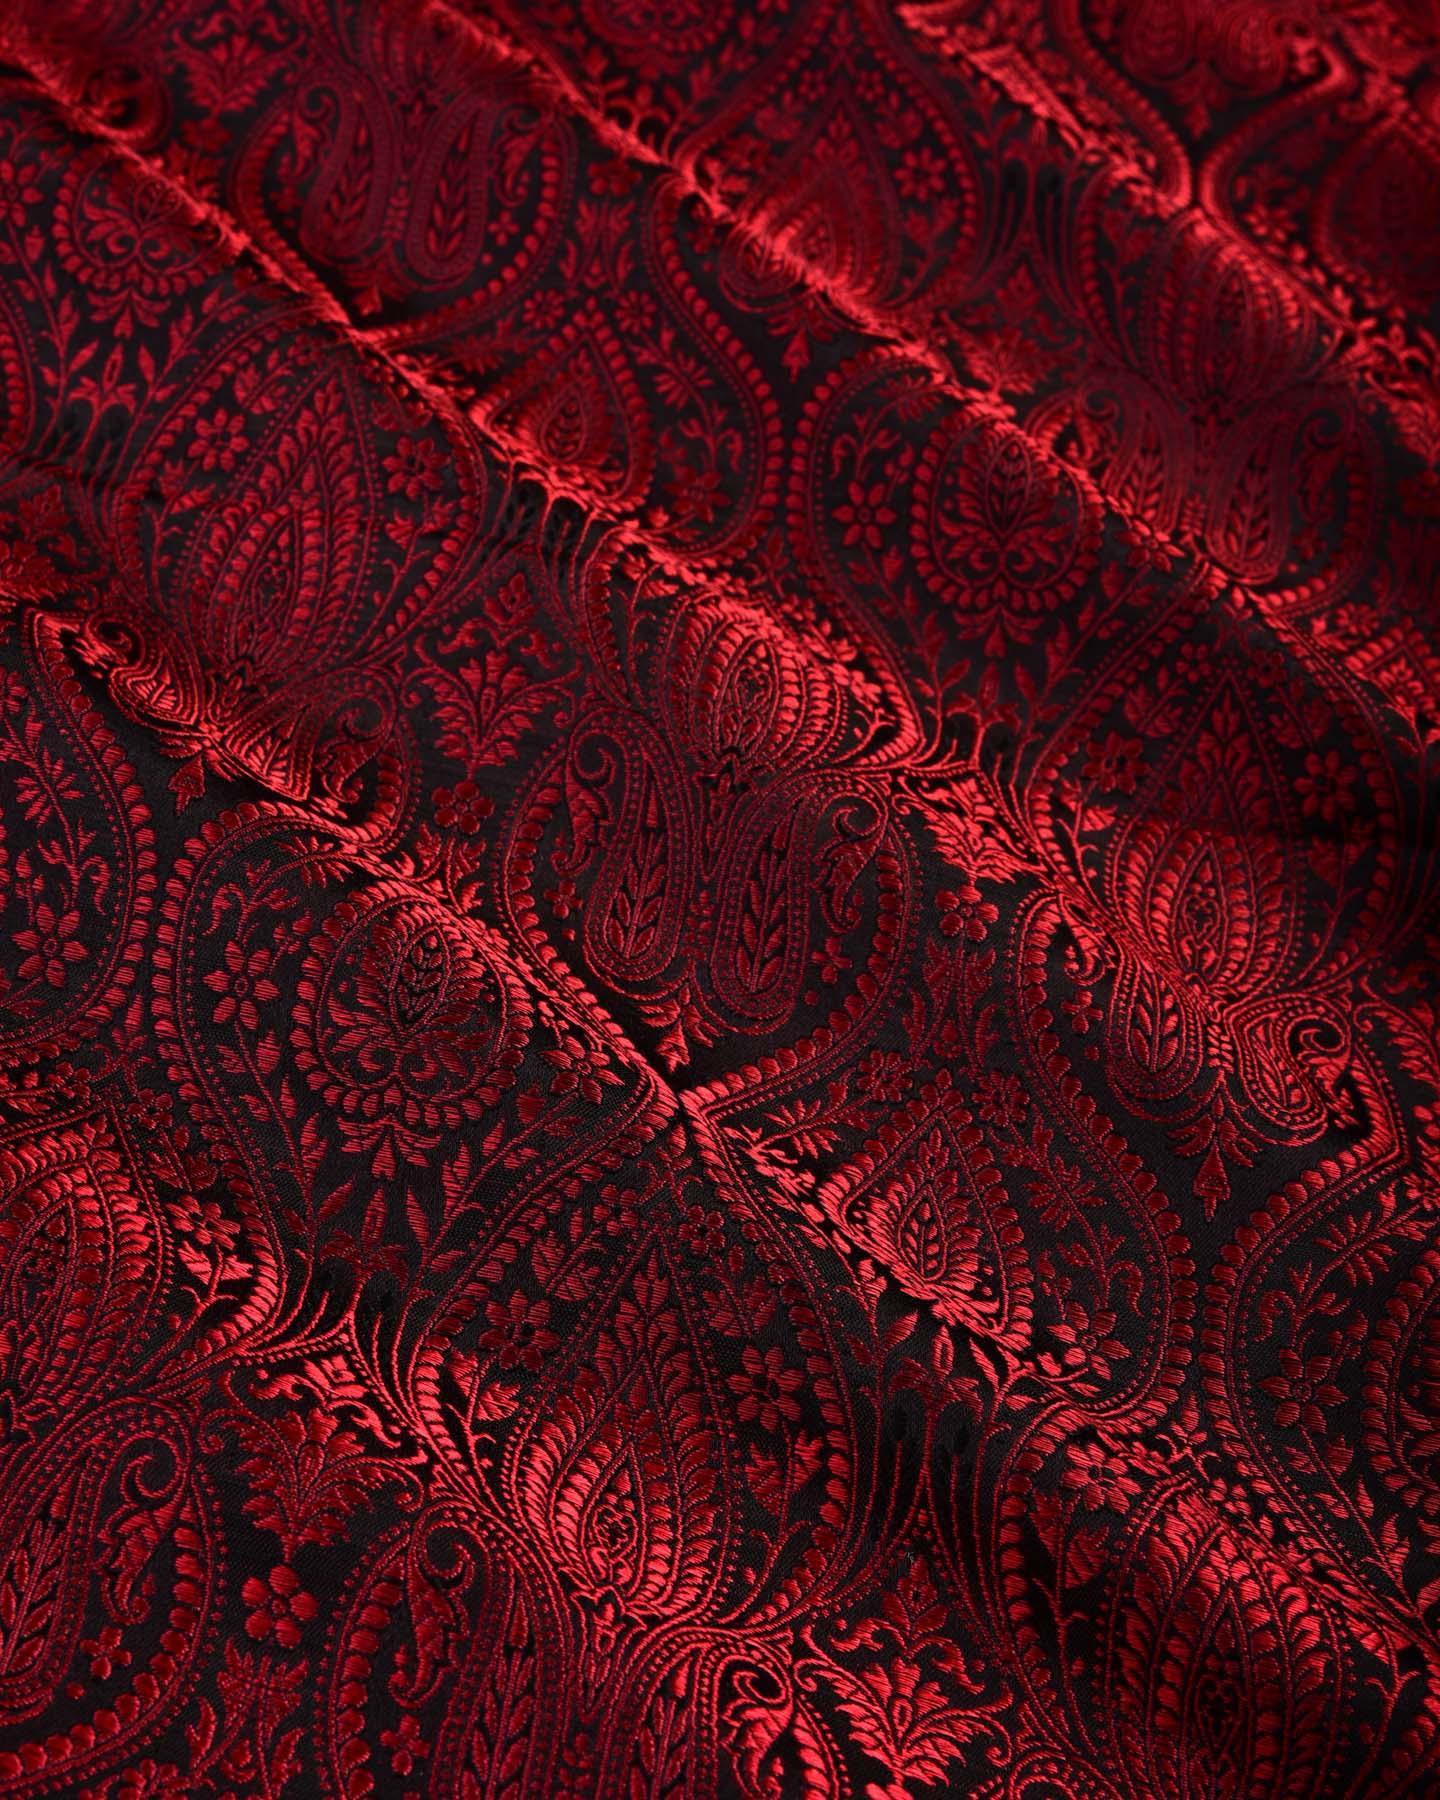 Red on Black Banarasi Tanchoi Handwoven Katan Silk Fabric - By HolyWeaves, Benares